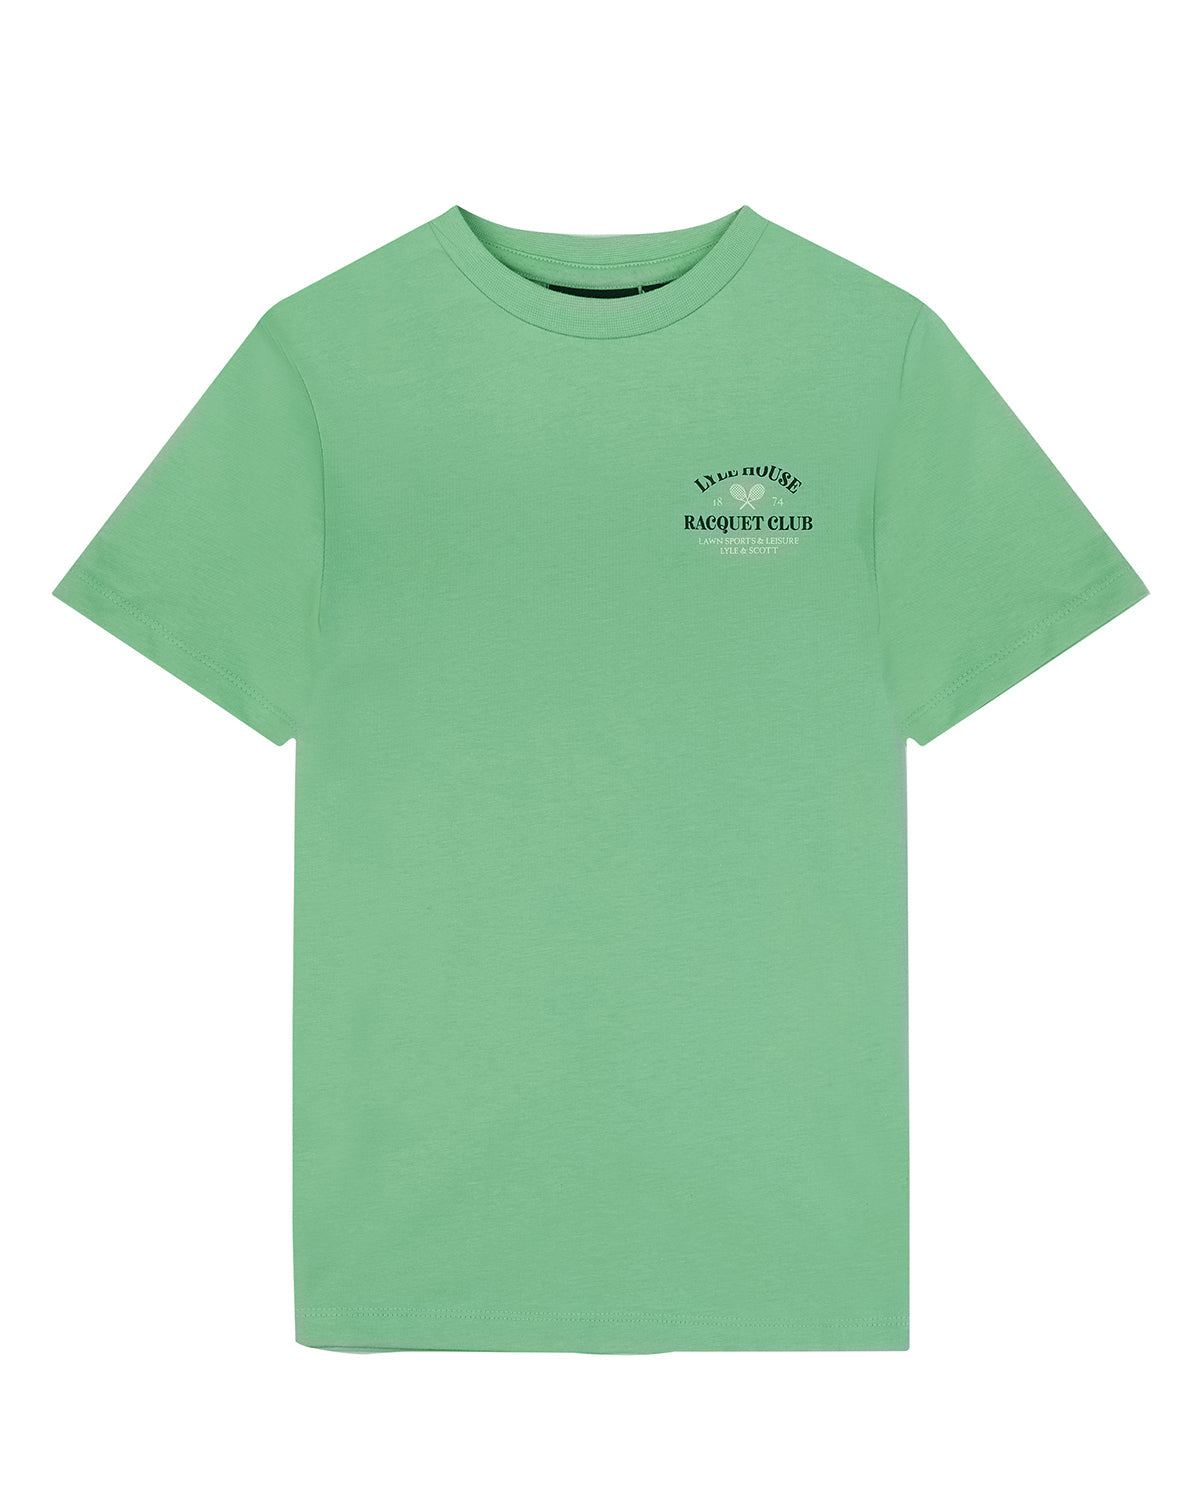 Jongens Racquet Club Graphic T-shirt van Lyle & Scott in de kleur X156 Lawn Green in maat 170-176.